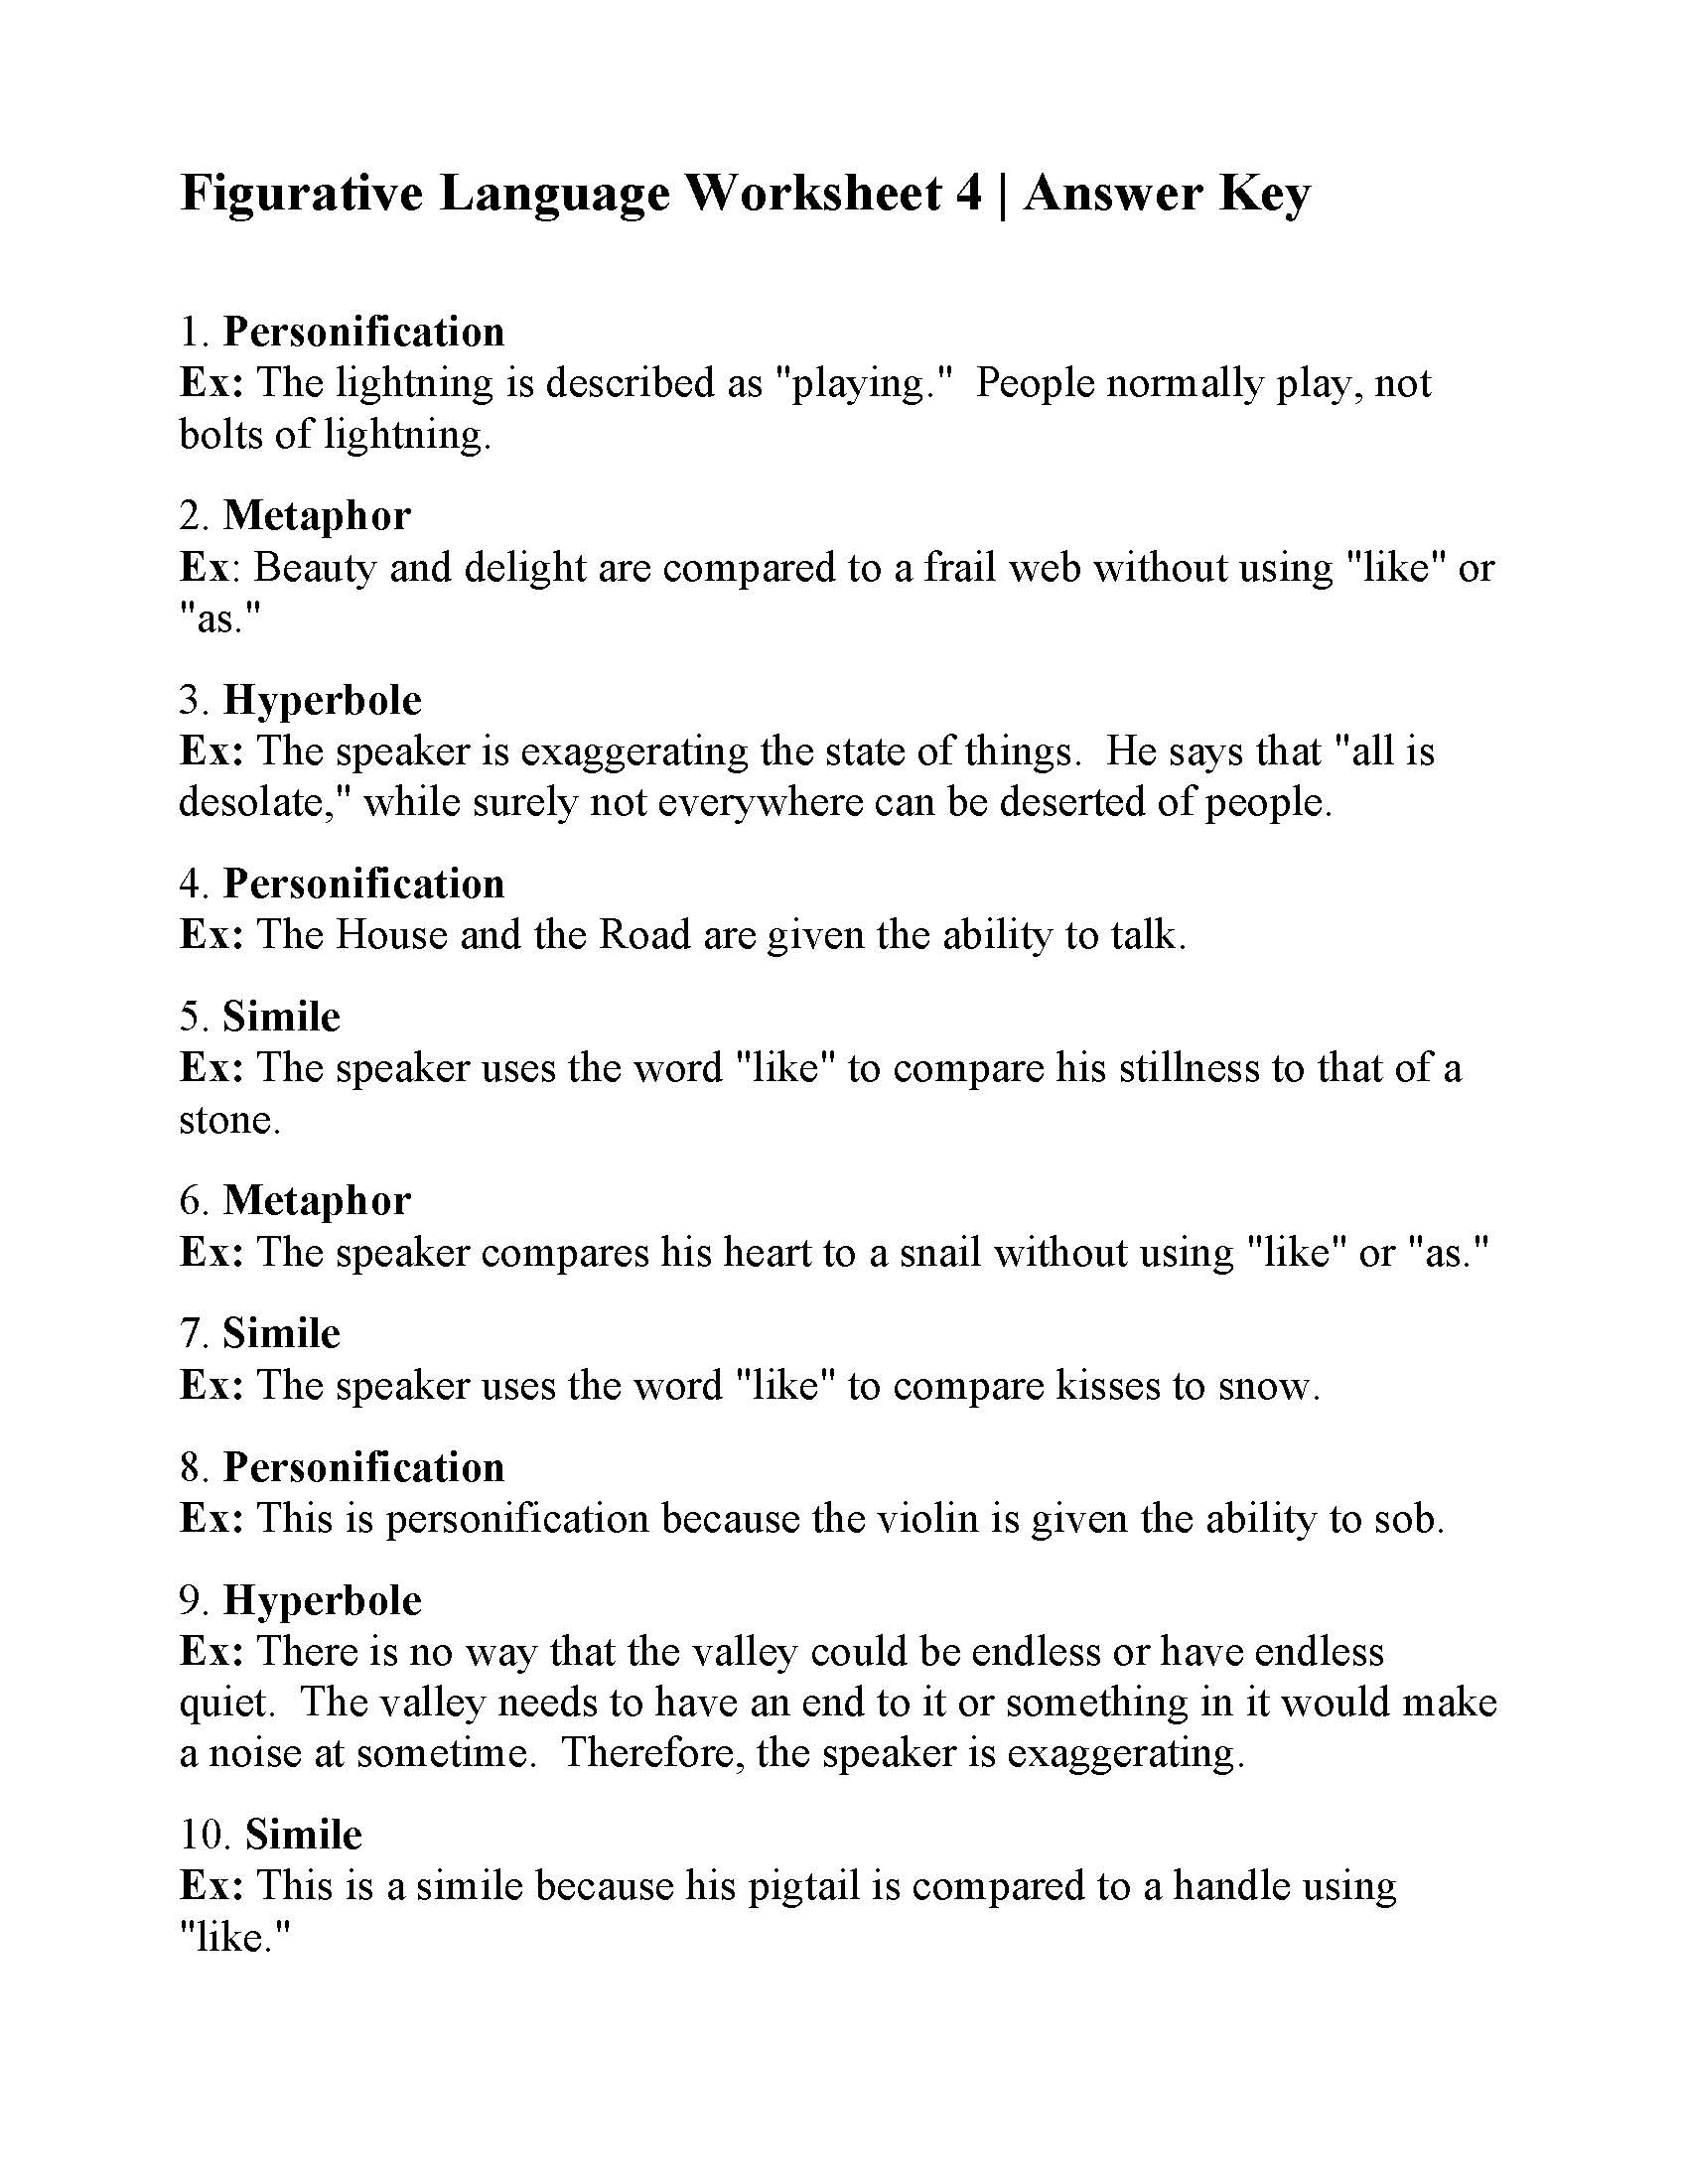 Figurative Language Worksheet 4 Reading Activity